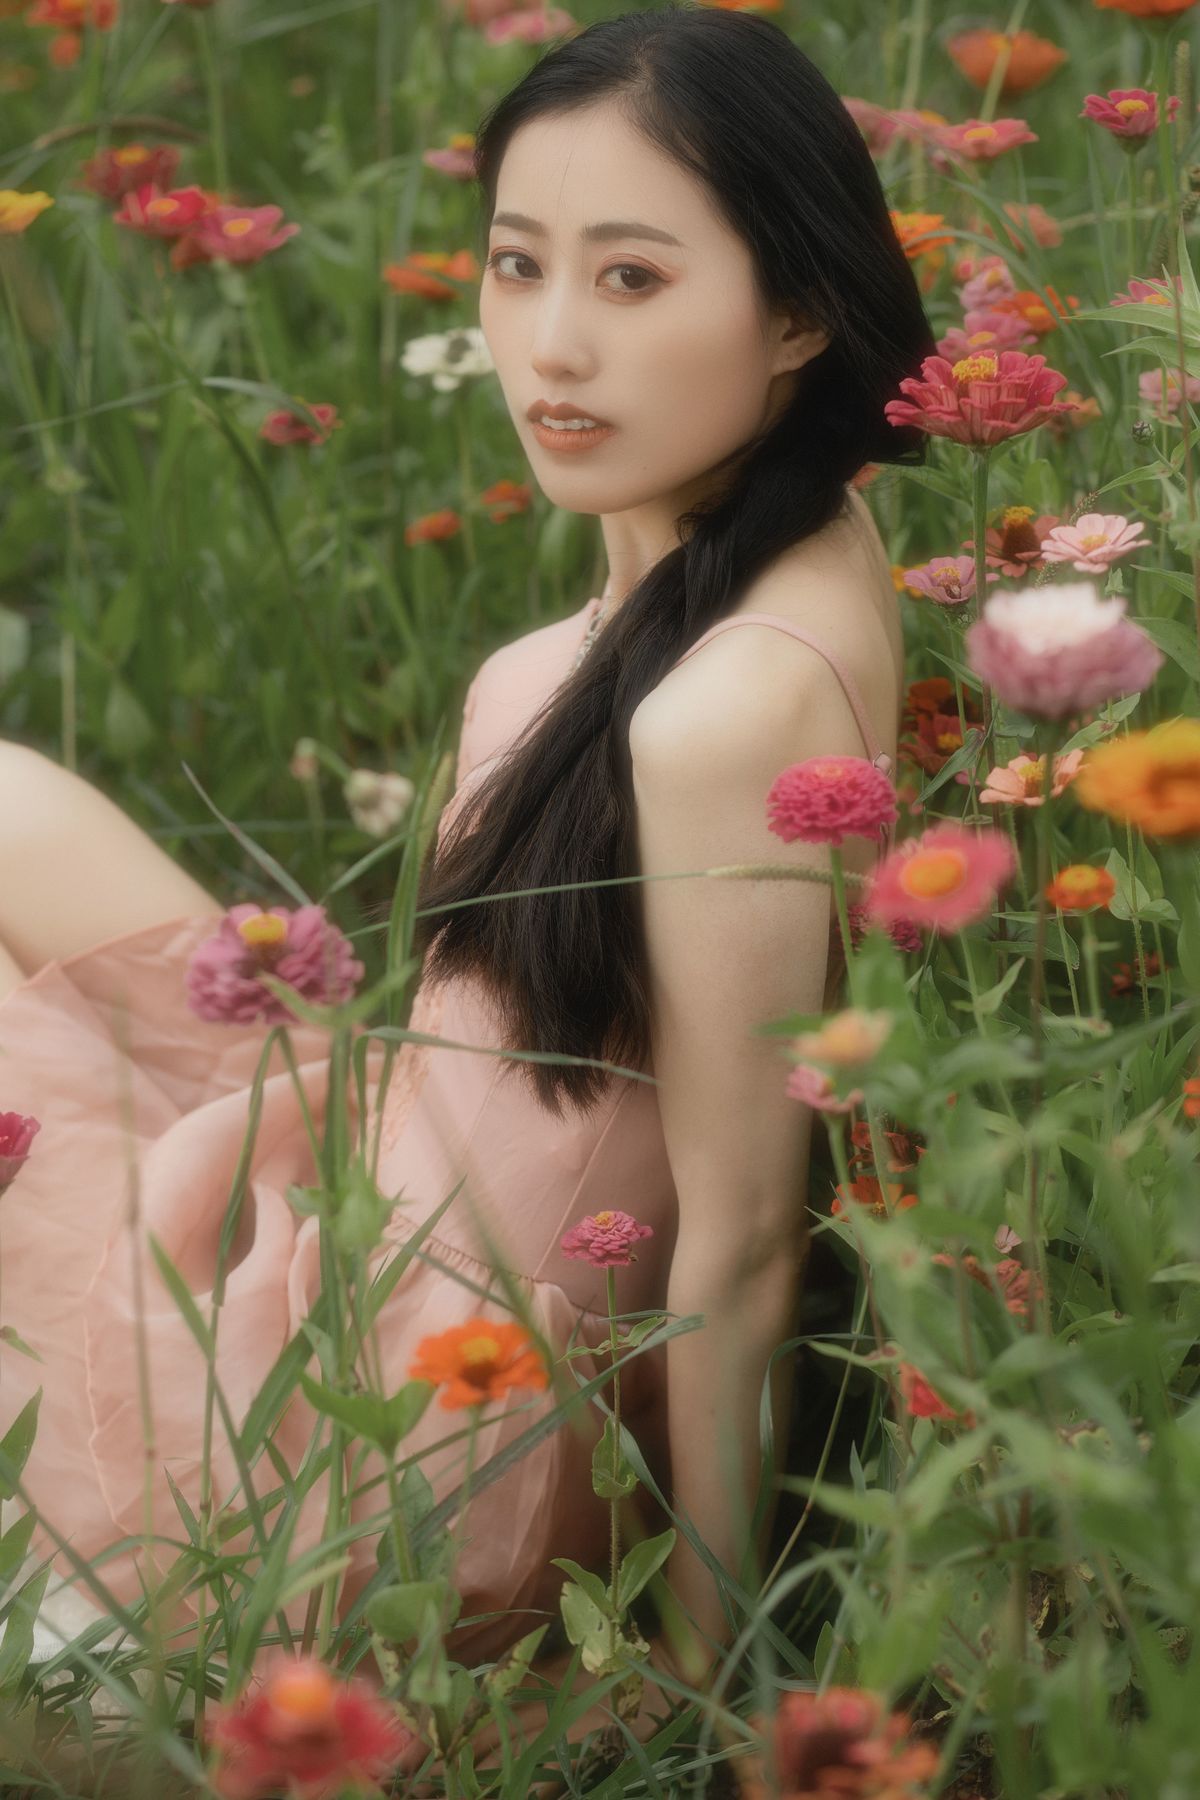 一位穿着美丽裙子的年轻女子坐在花丛中